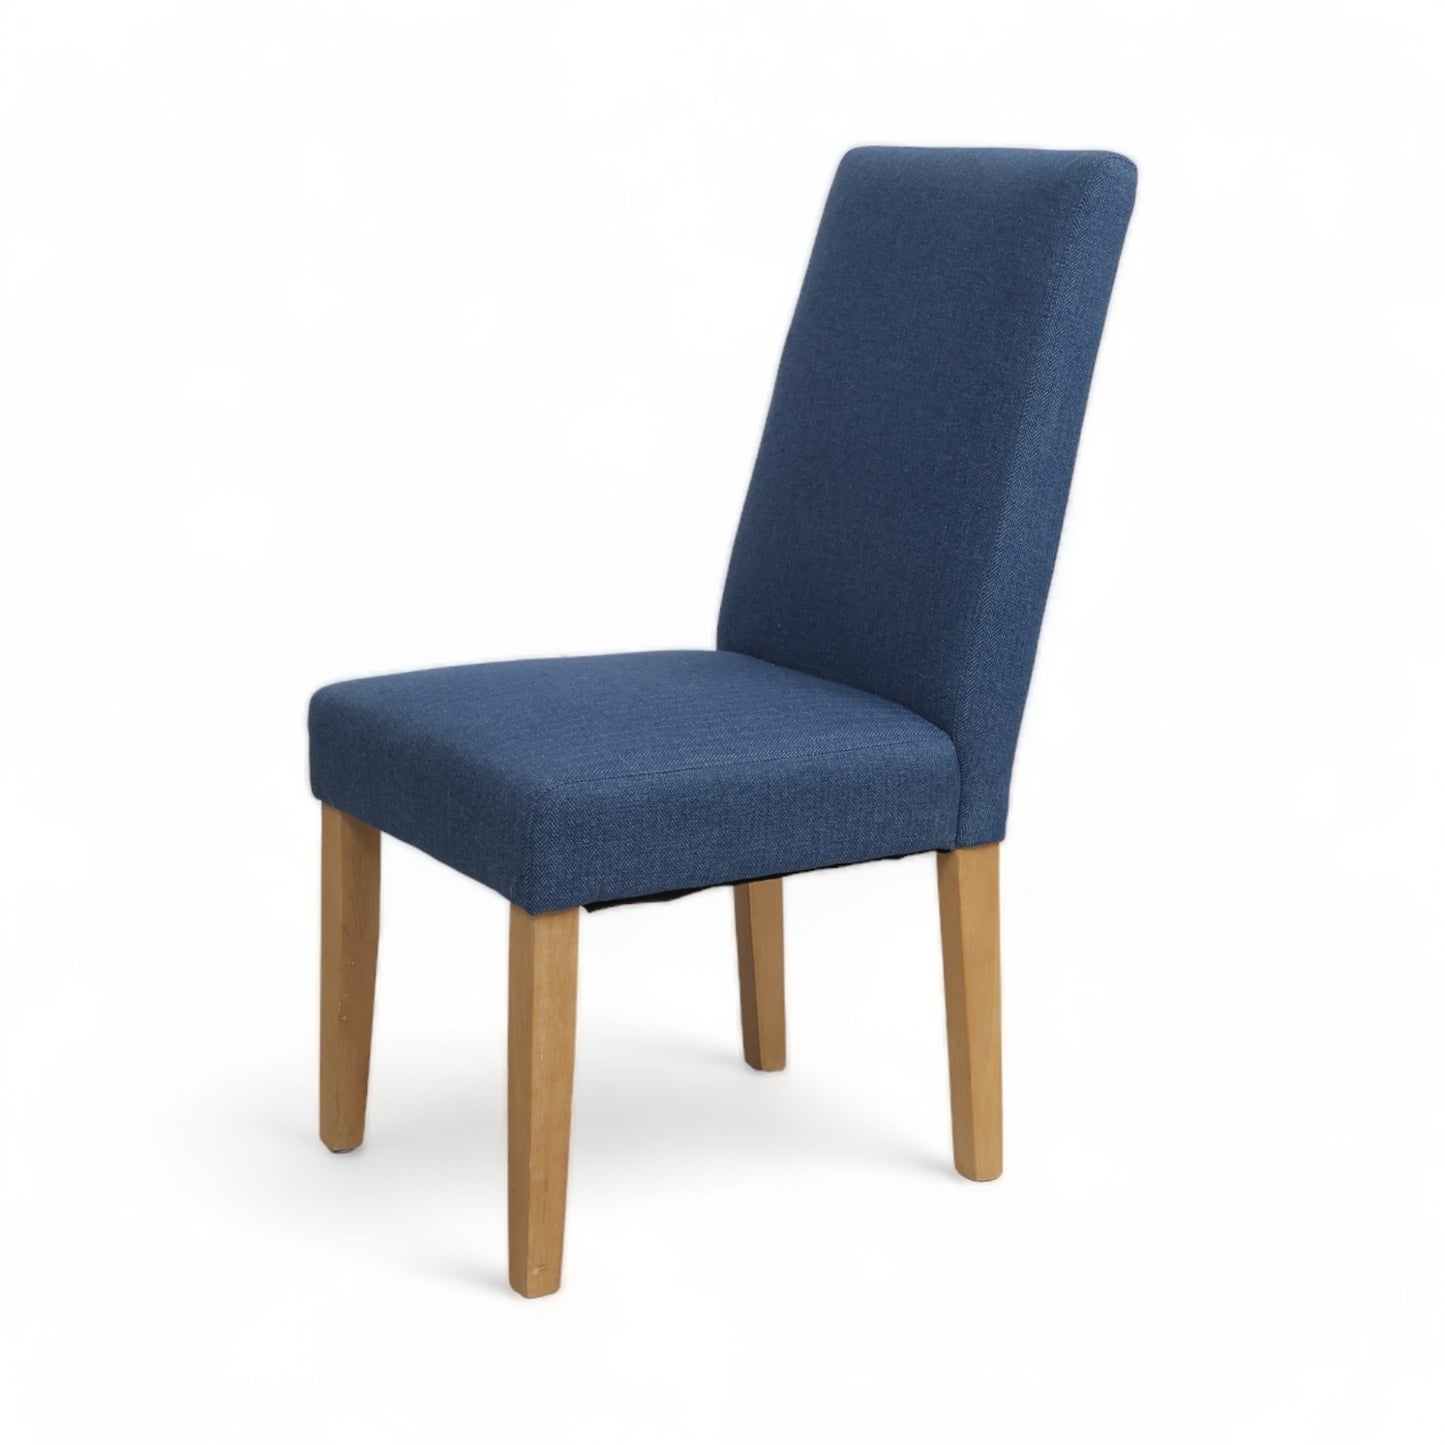 Nyrenset | Enkel spisestol i fargen blå